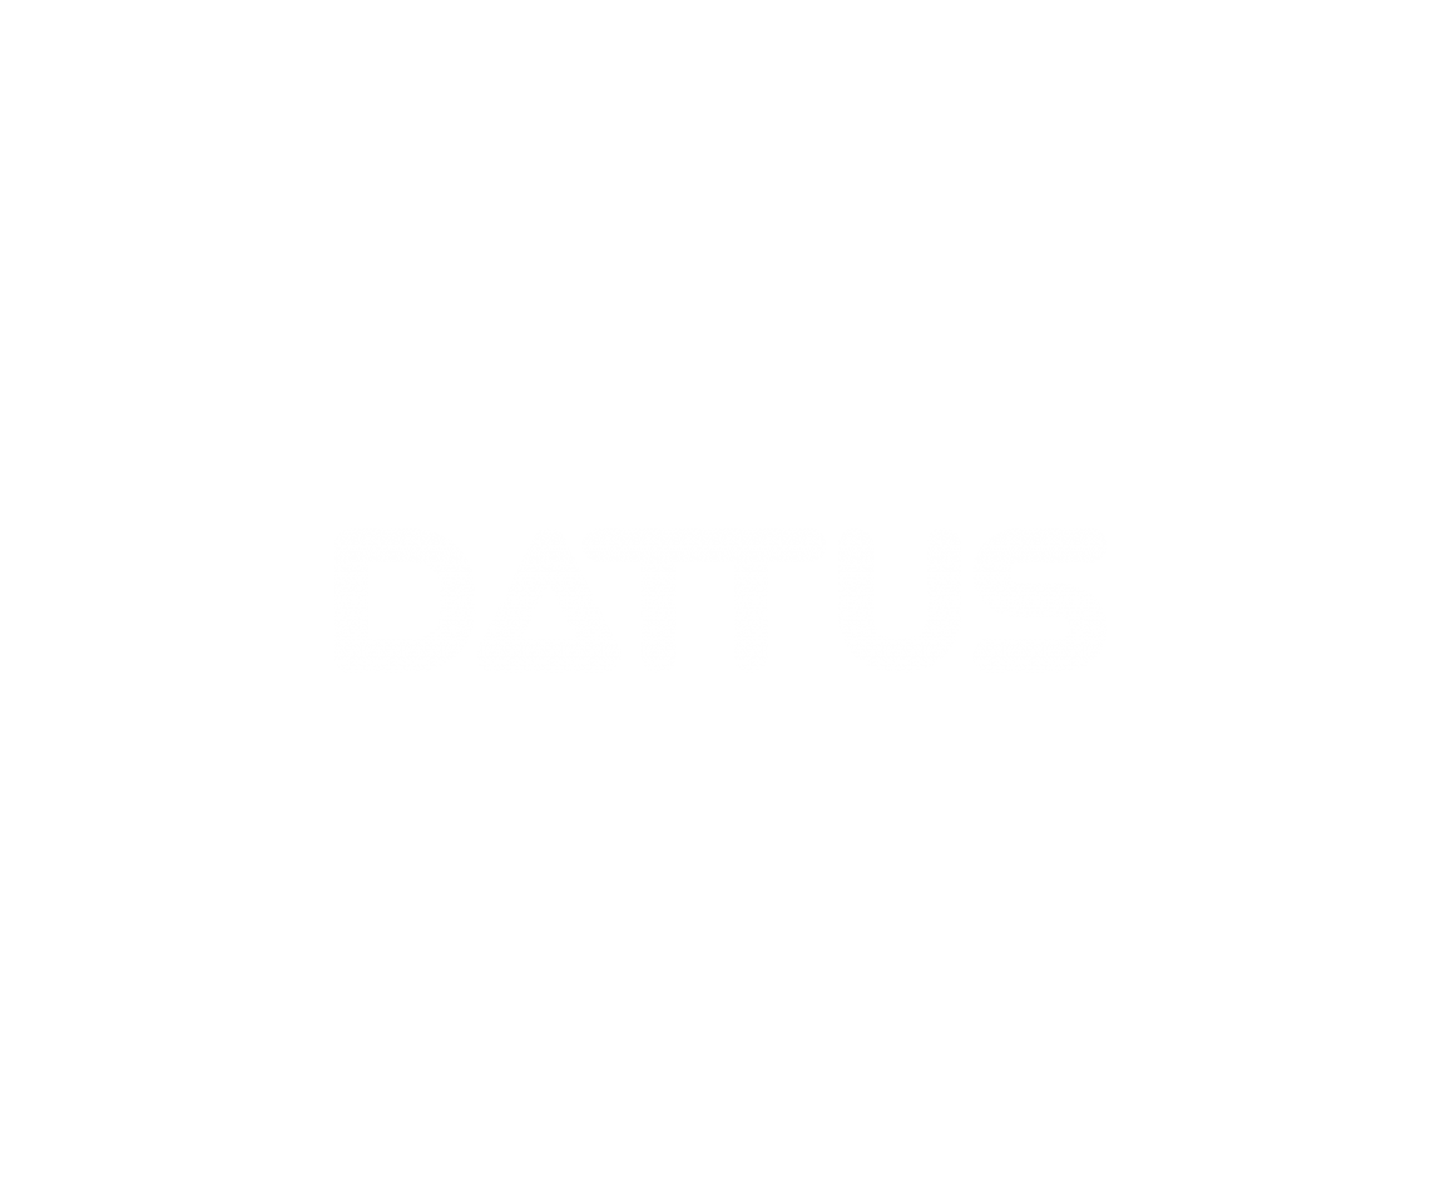 Dattus